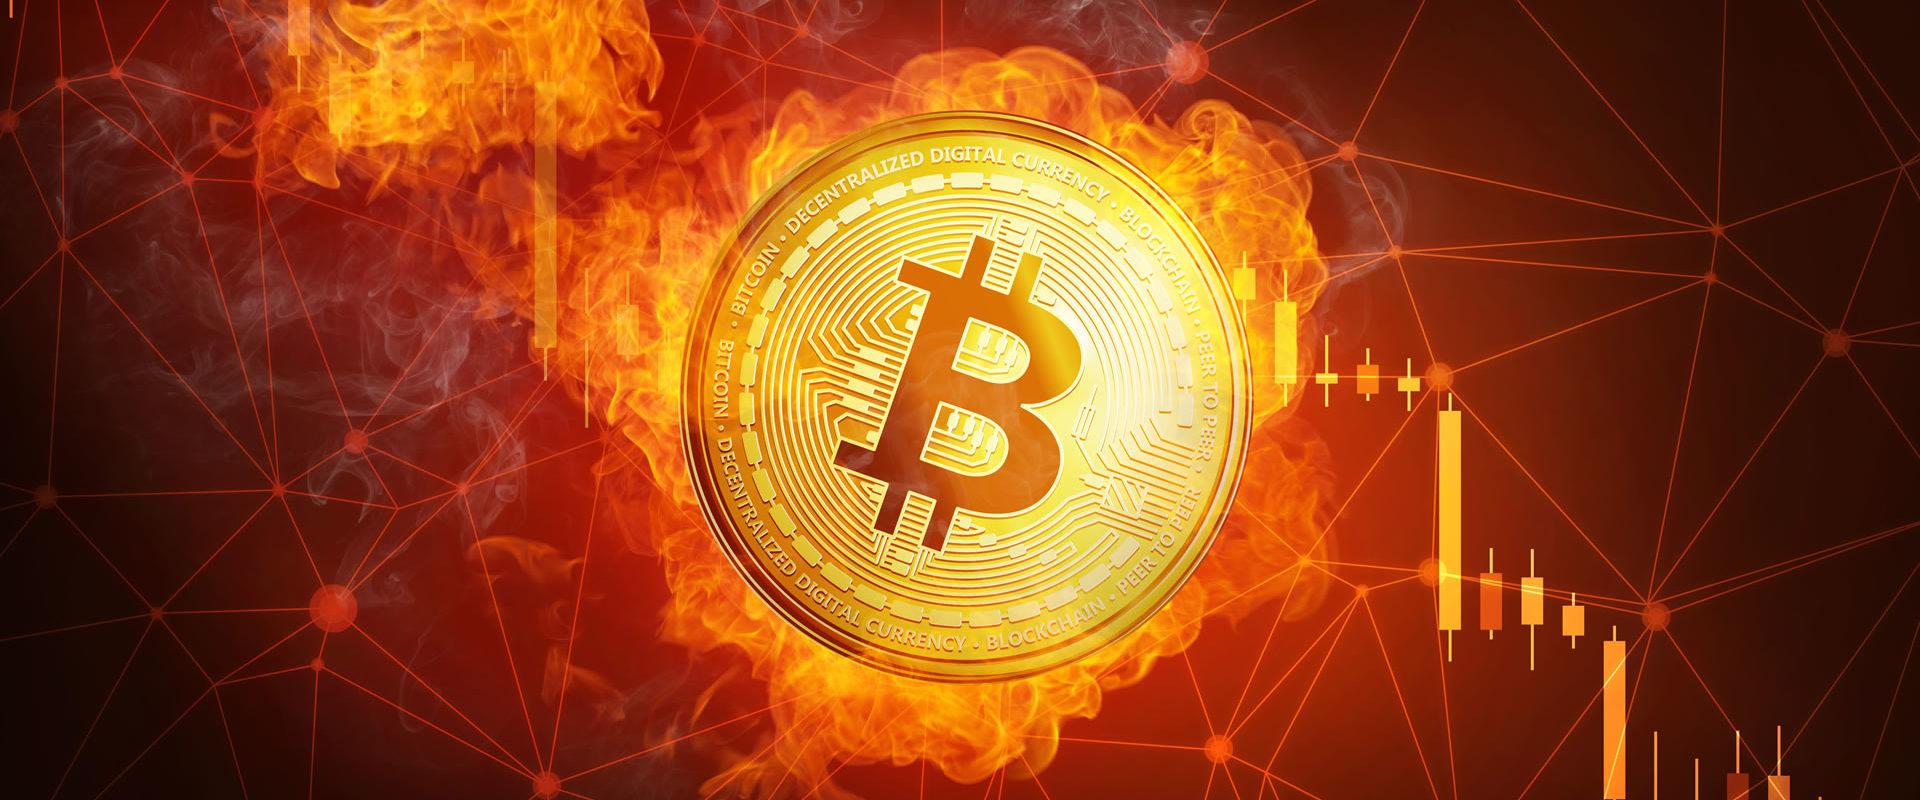 AAX Exchange Integrates Bitcoin's Lightning Network